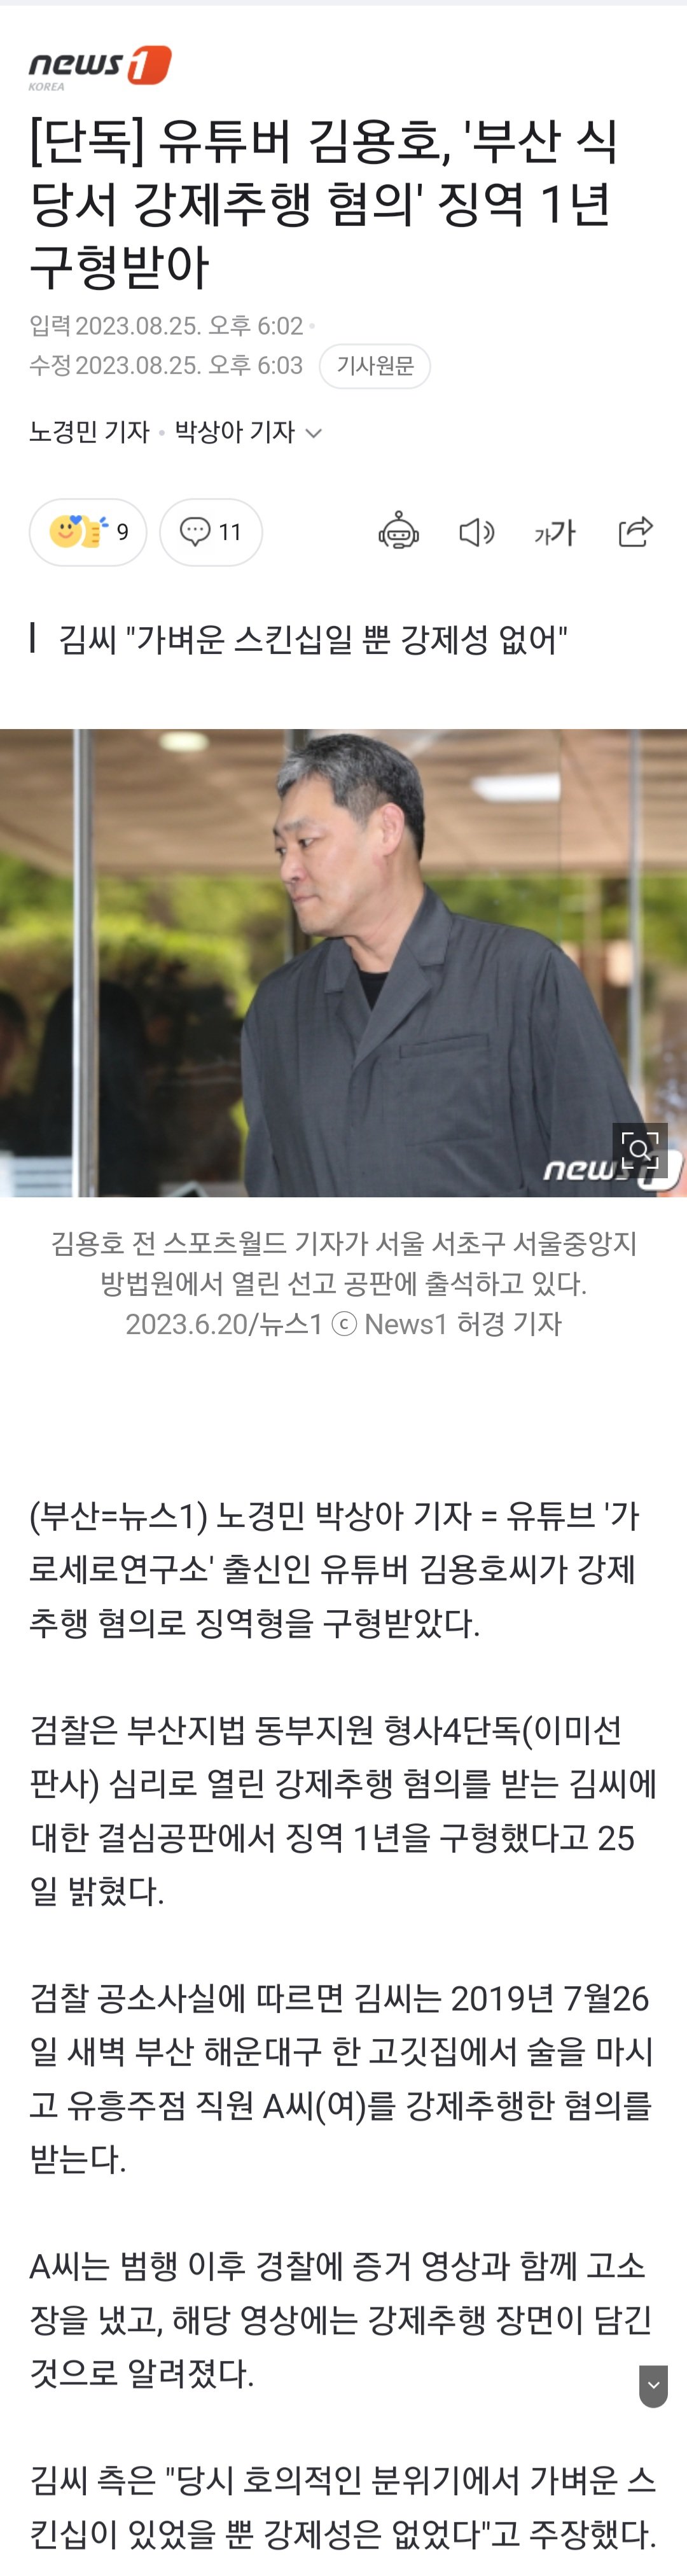 [단독] 유튜버 김용호, \'부산 식당서 강제추행 혐의\' 징역 1년 구형받아